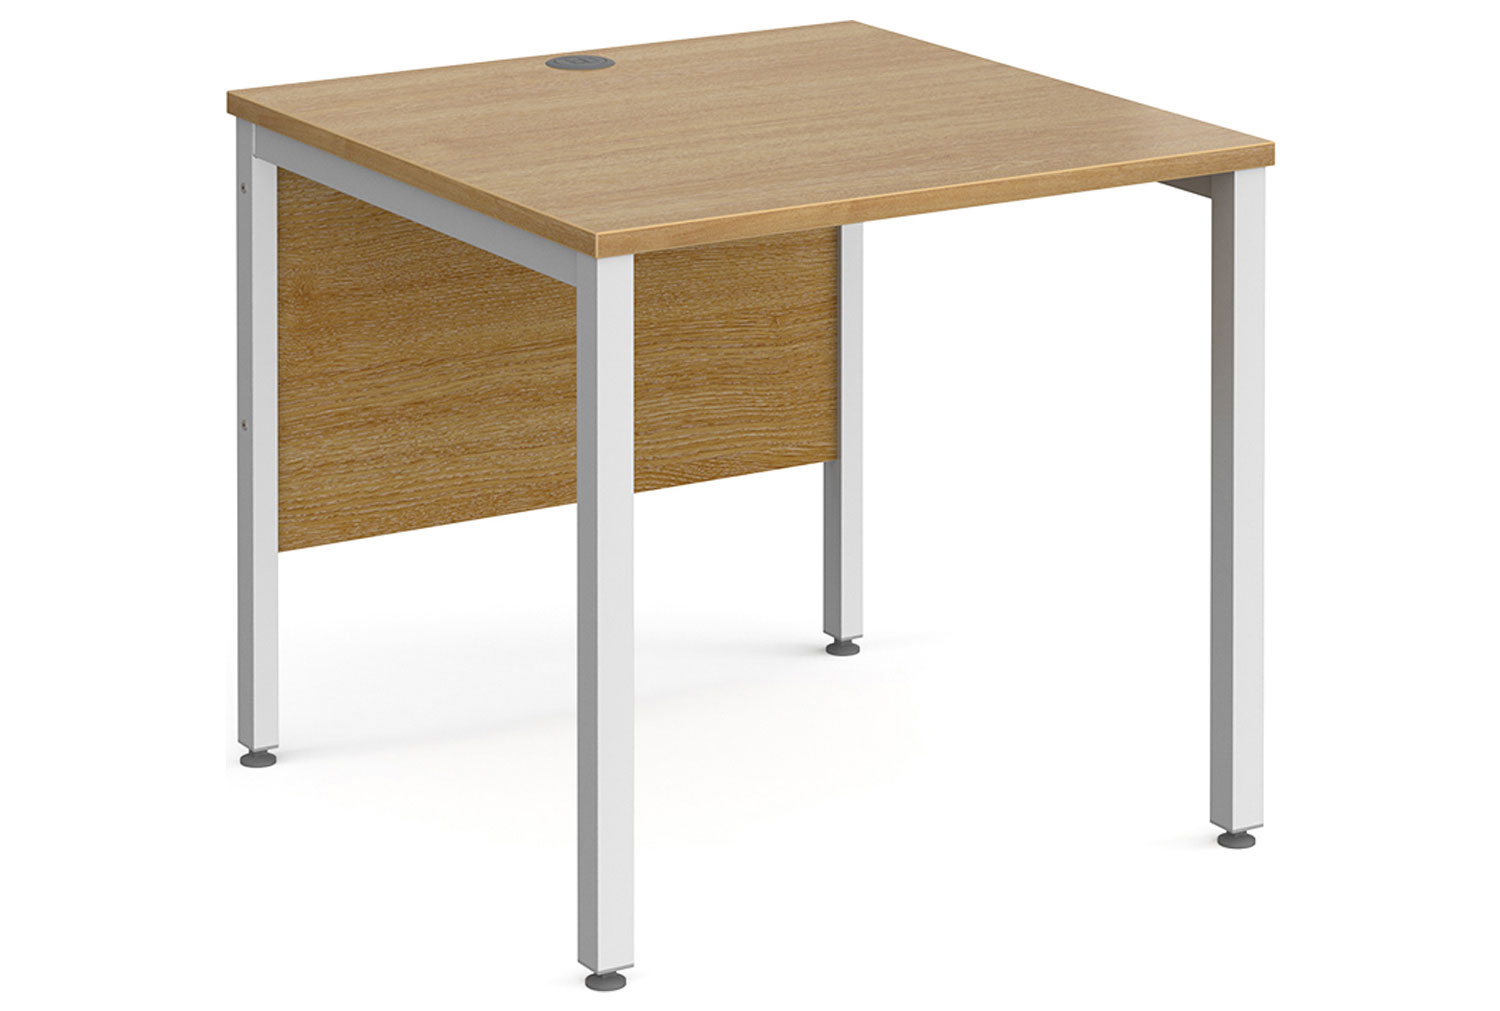 Tully Bench Rectangular Office Desk 80wx80dx73h (cm), Oak